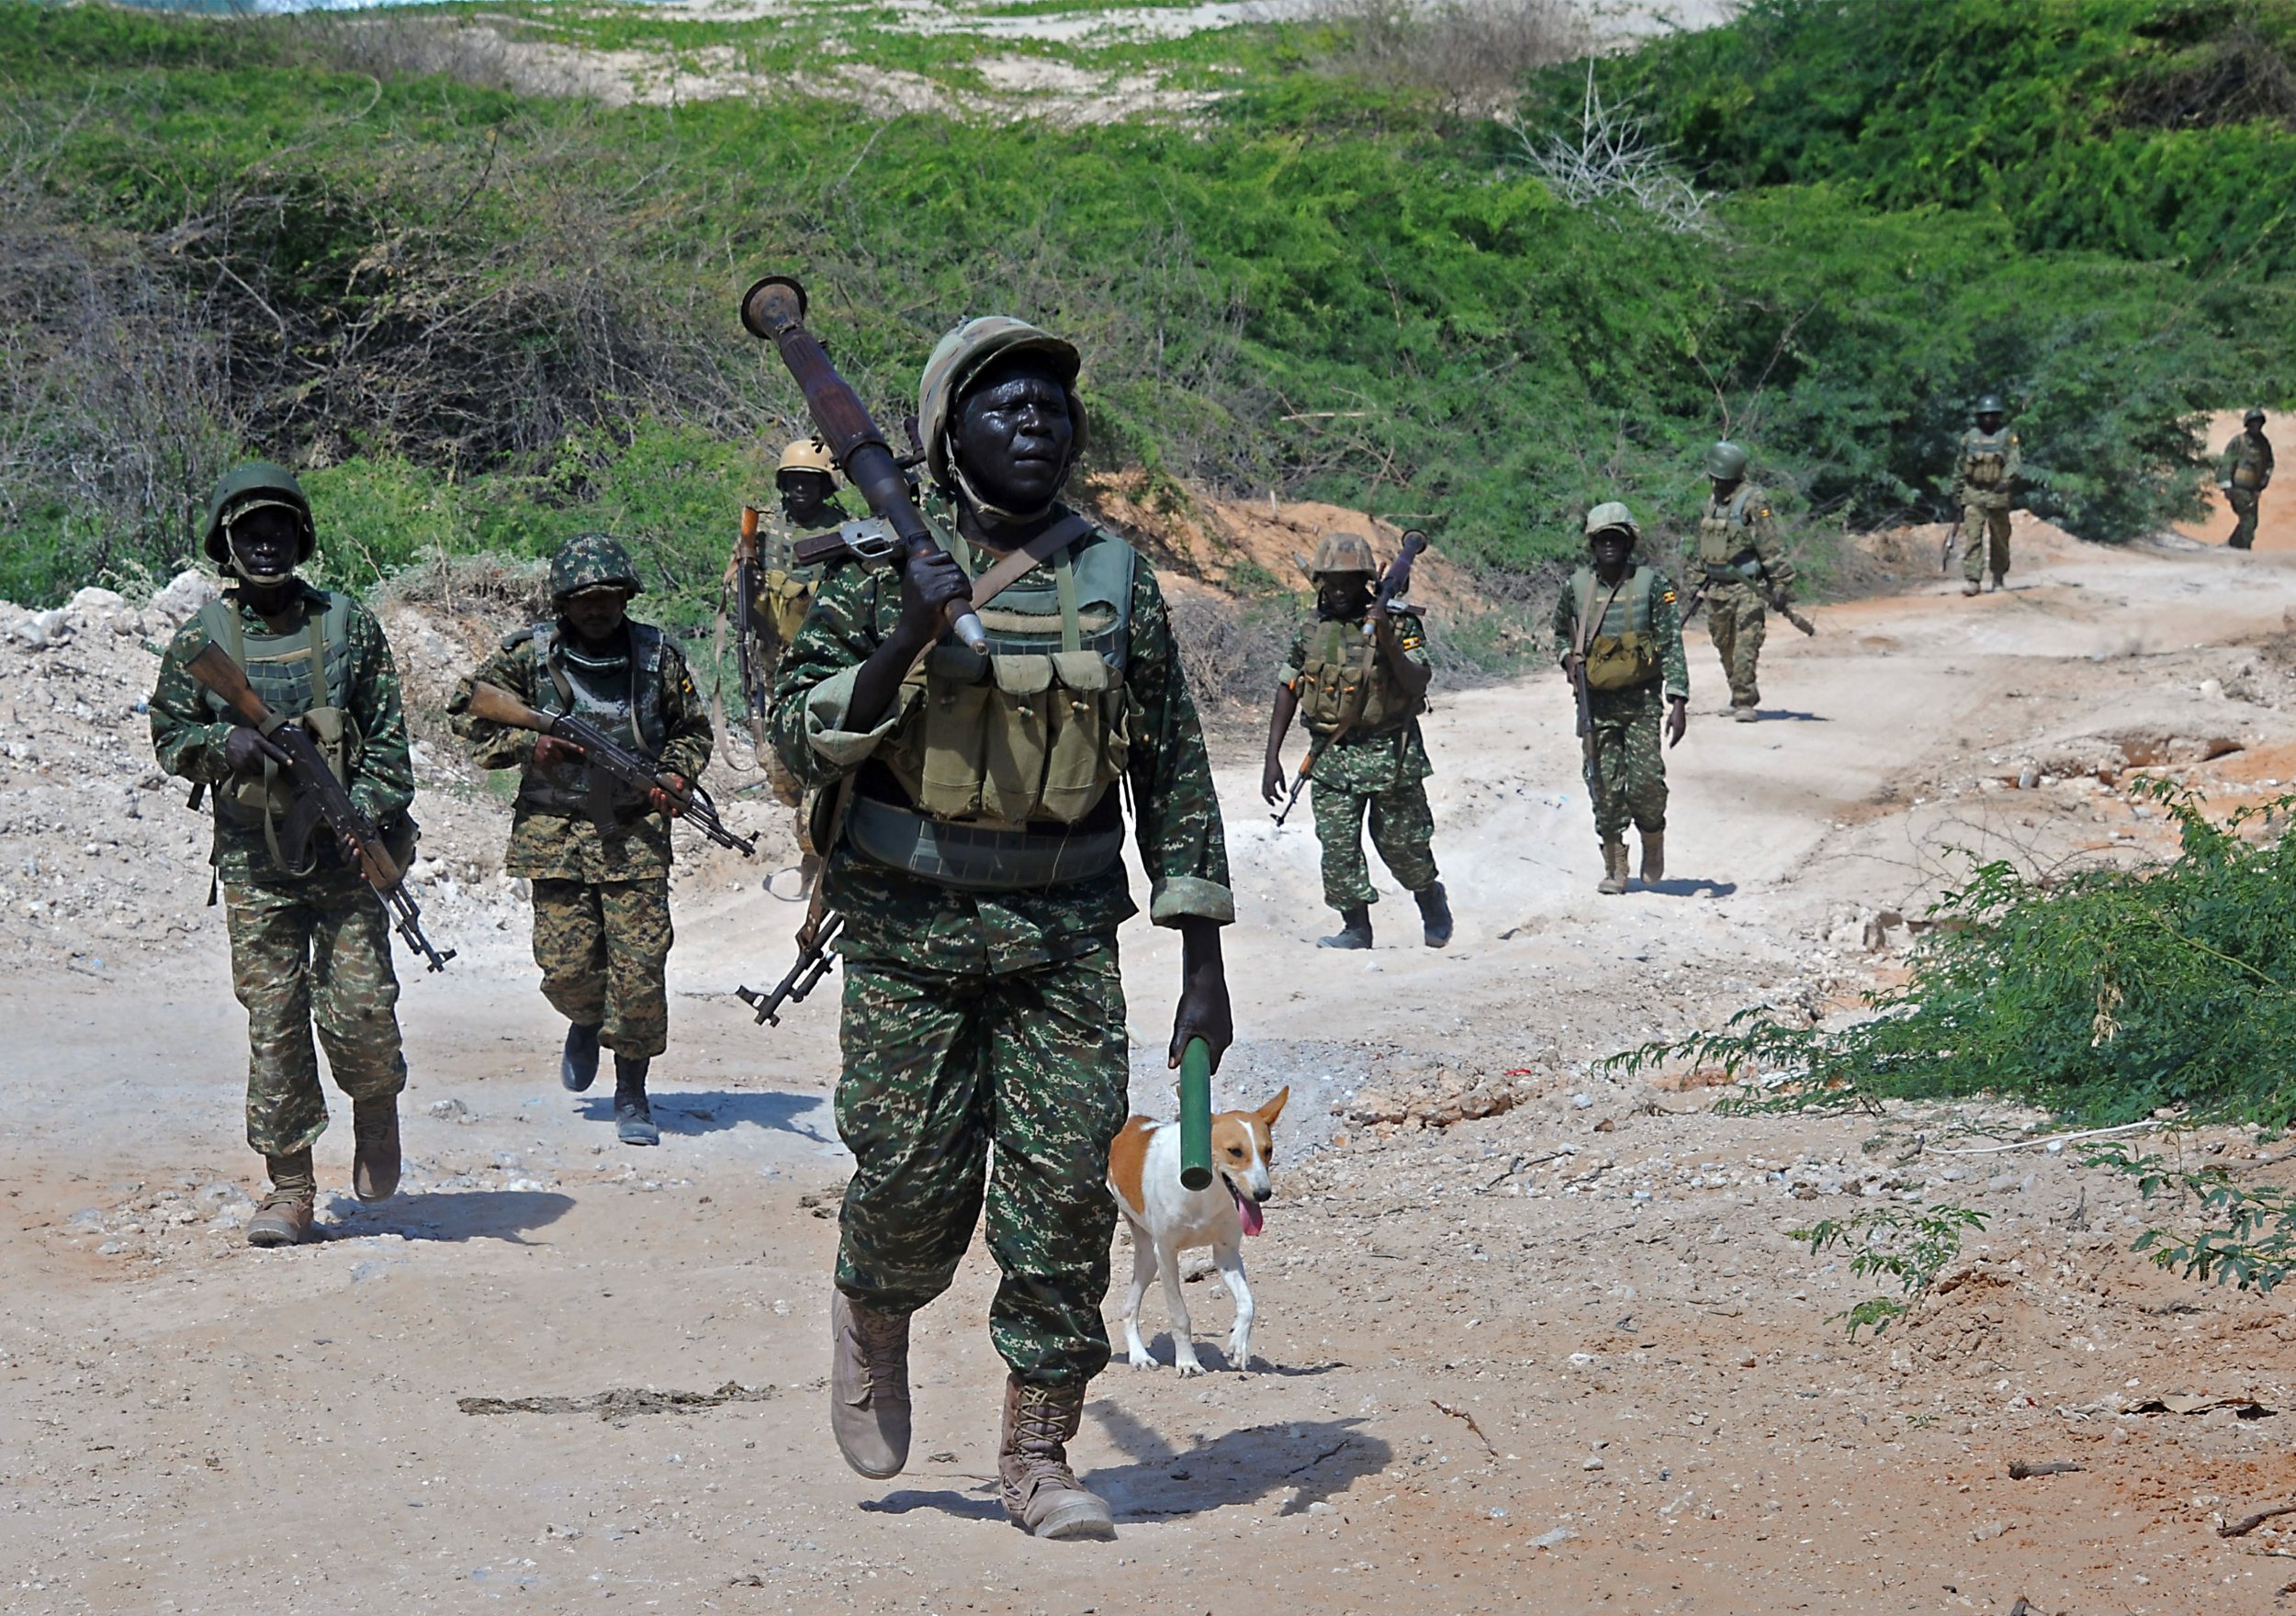 AMISOM peacekeepers